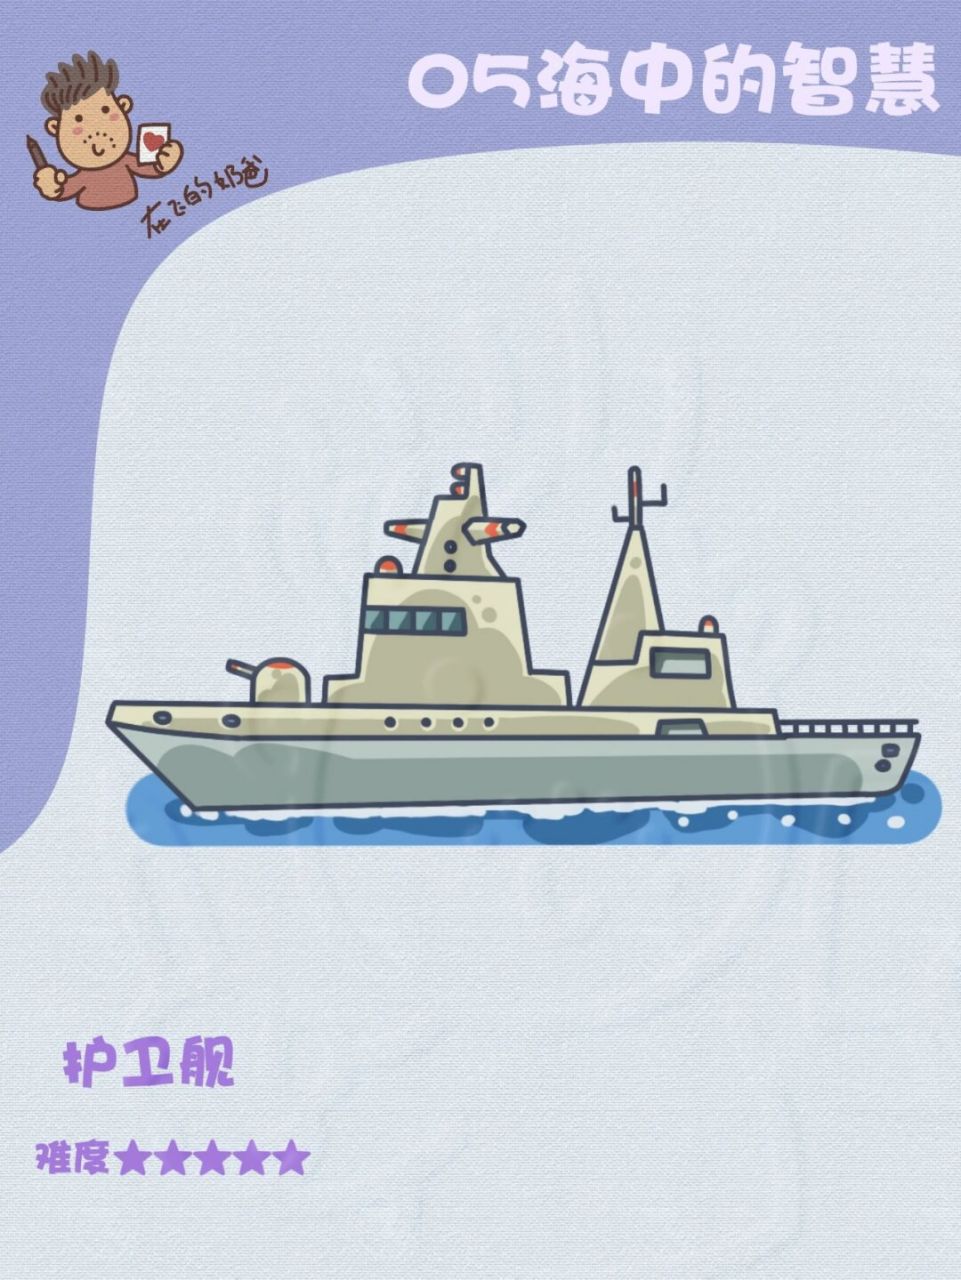 军舰简笔画画法图片